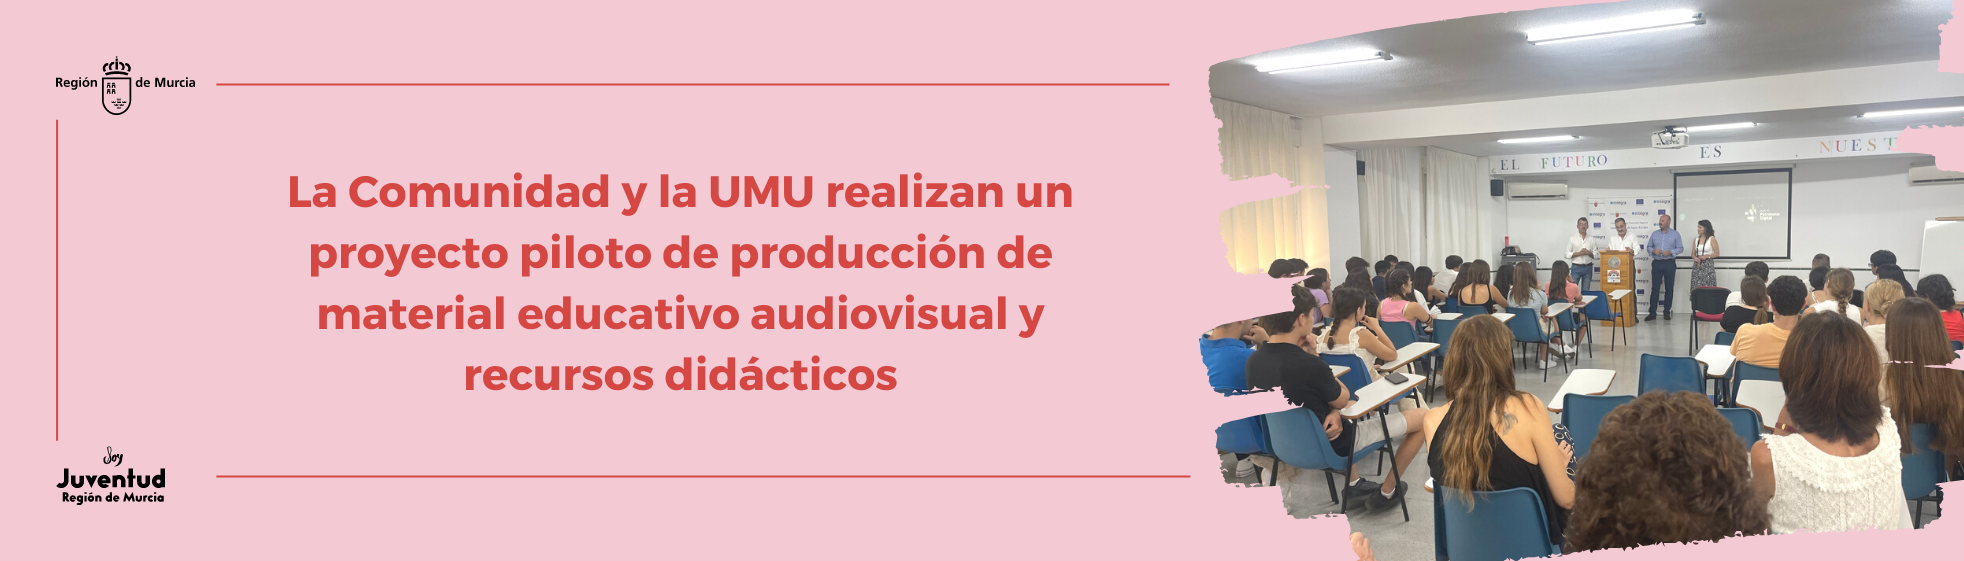 La Comunidad y la UMU realizan un proyecto piloto de producción de material educativo audiovisual y recursos didácticos